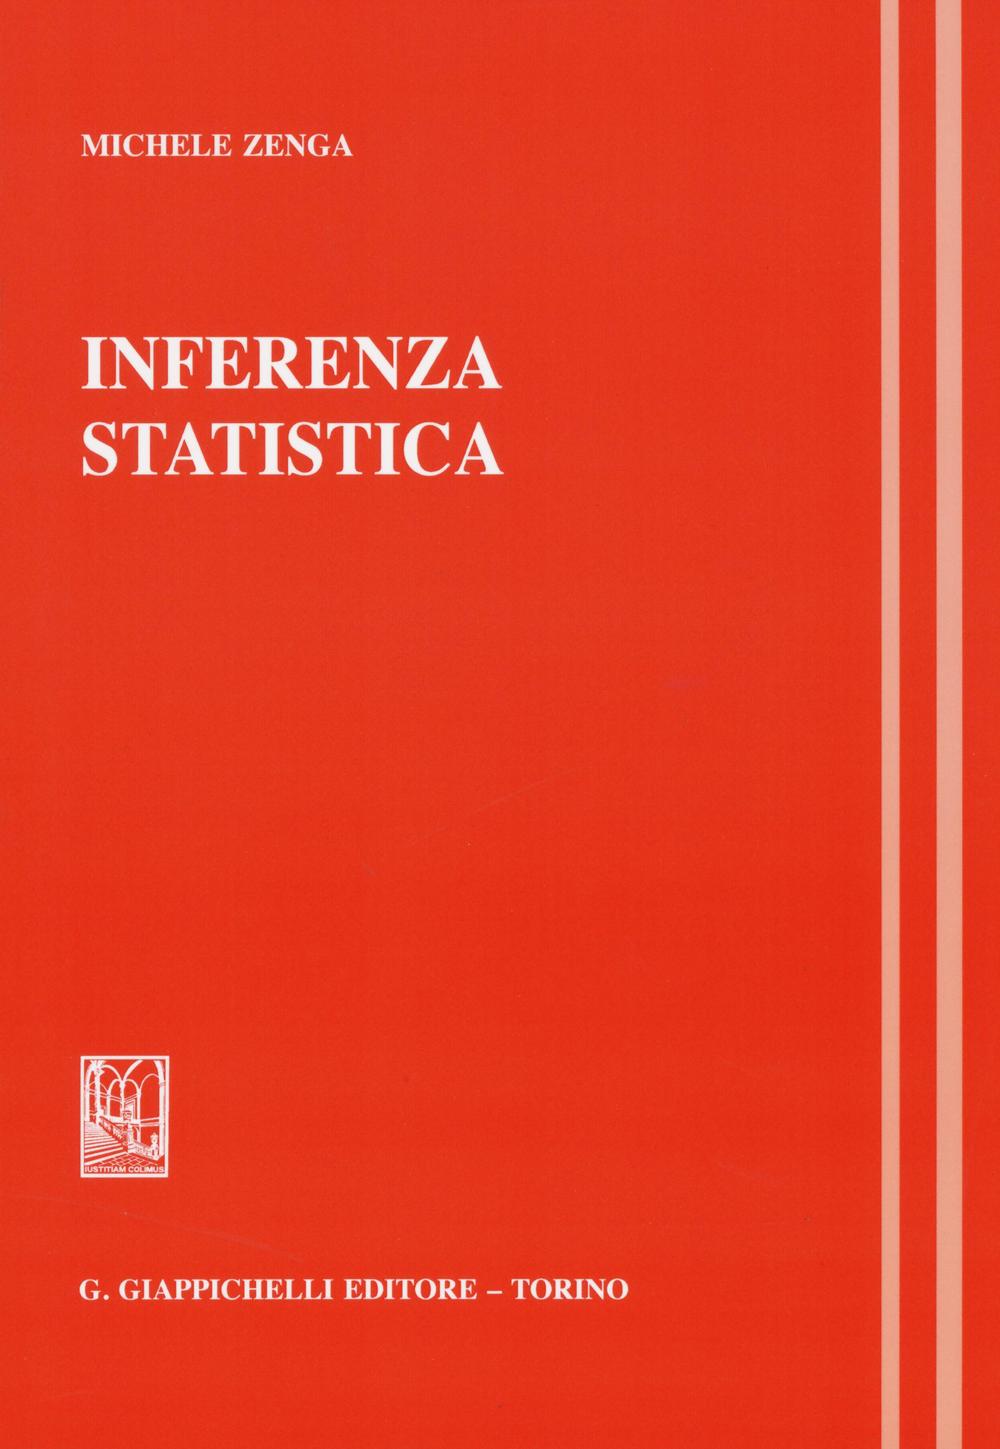 Libri Michele Zenga - Inferenza Statistica NUOVO SIGILLATO, EDIZIONE DEL 02/05/1996 SUBITO DISPONIBILE